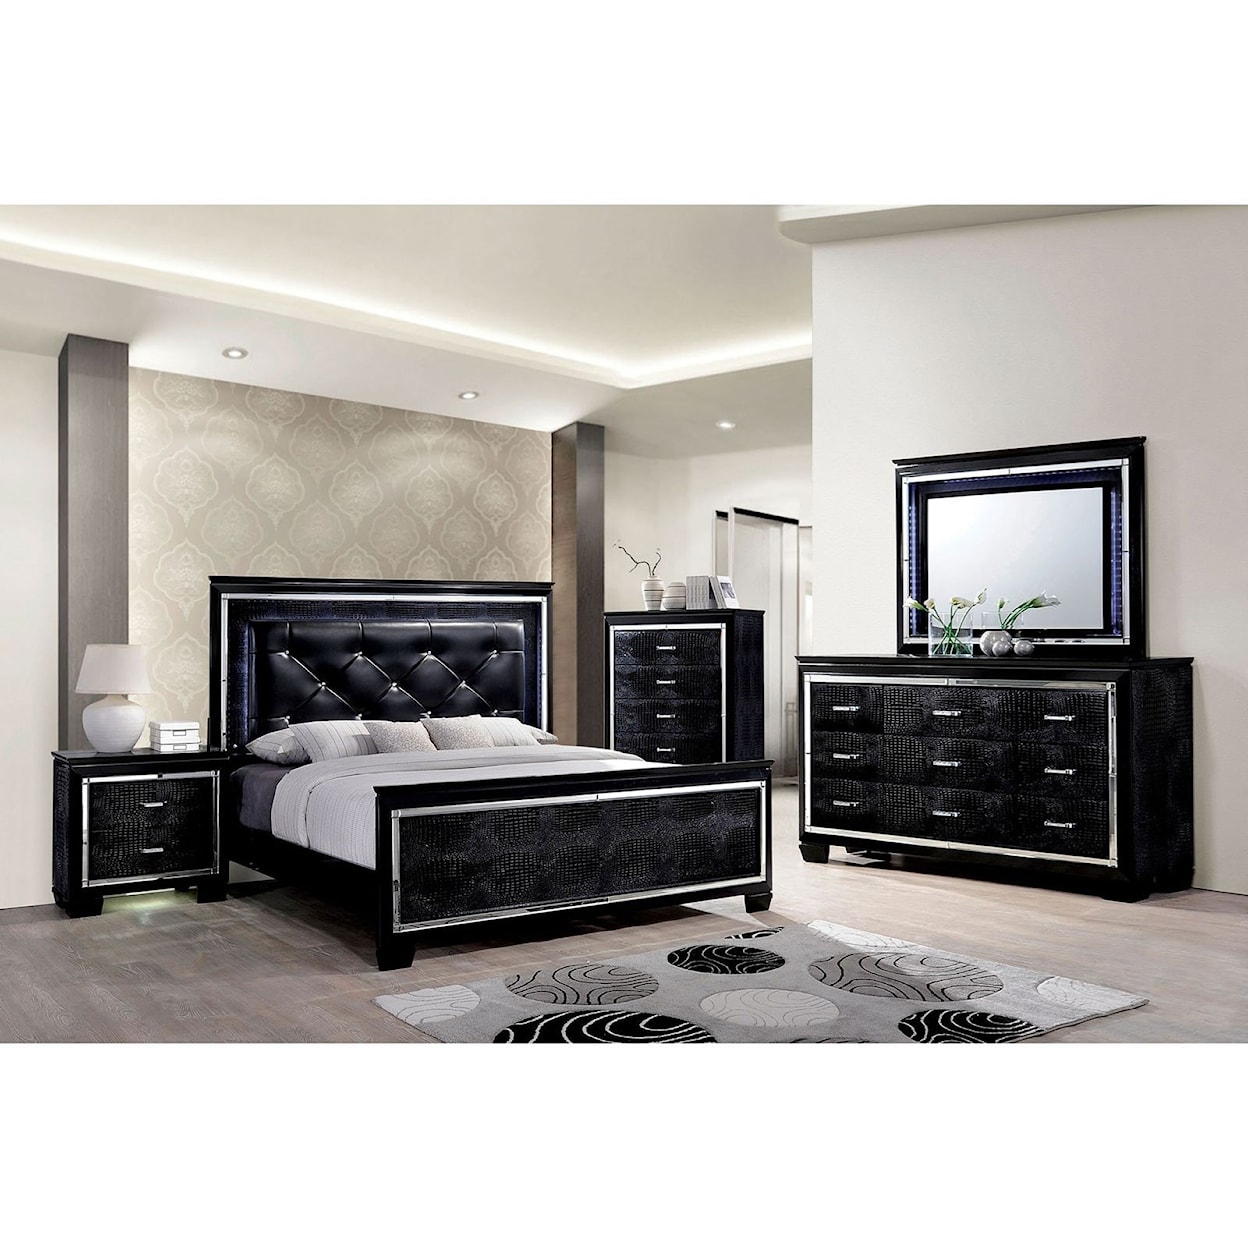 Furniture of America Bellanova Queen Bedroom Group